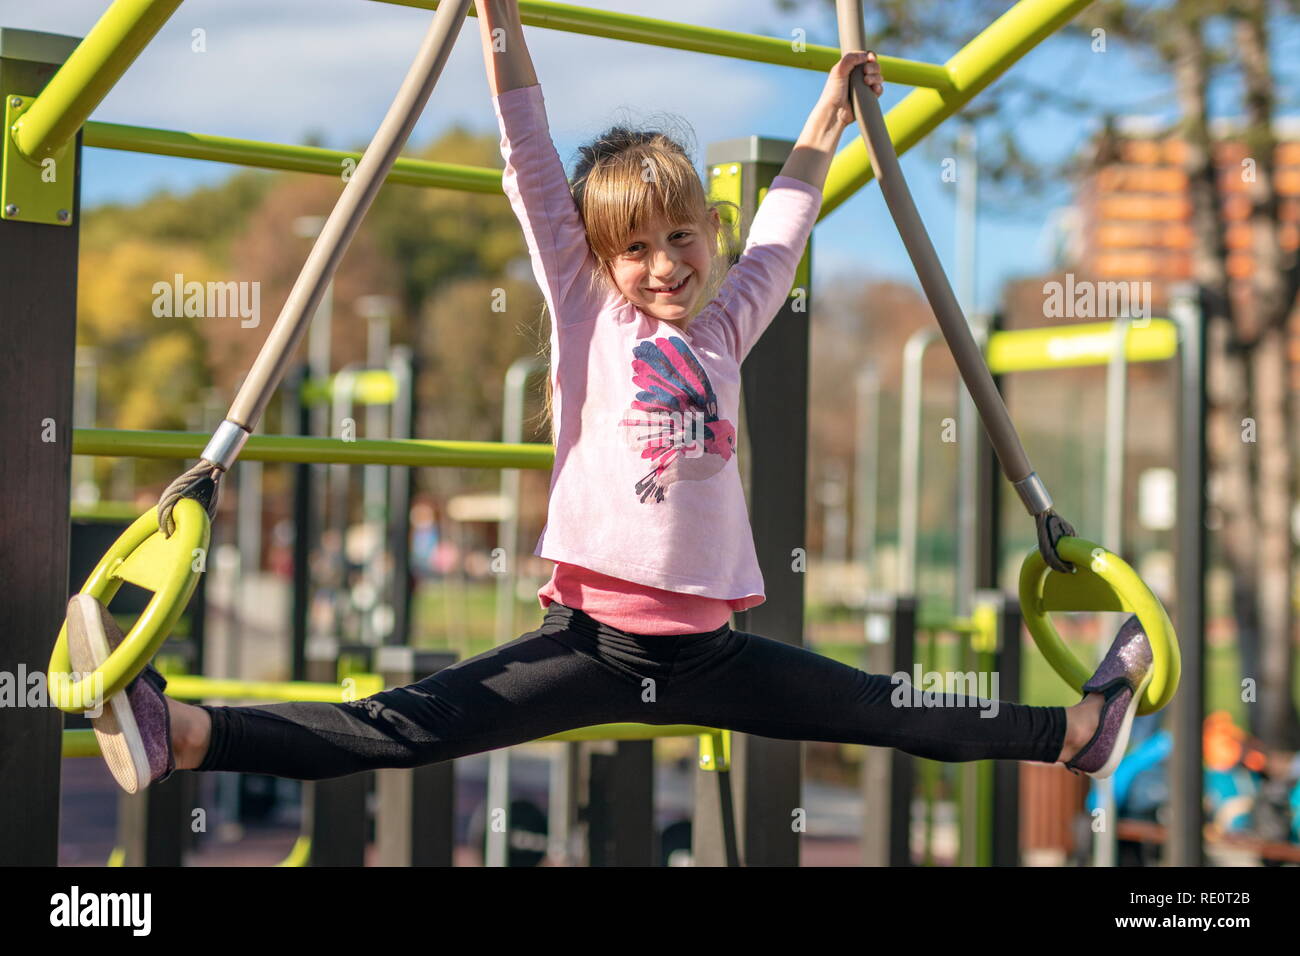 Junge Mädchen erstreckt sich in Splits Position auf Gymnastik Ringe außerhalb auf einem Spielplatz Stockfoto